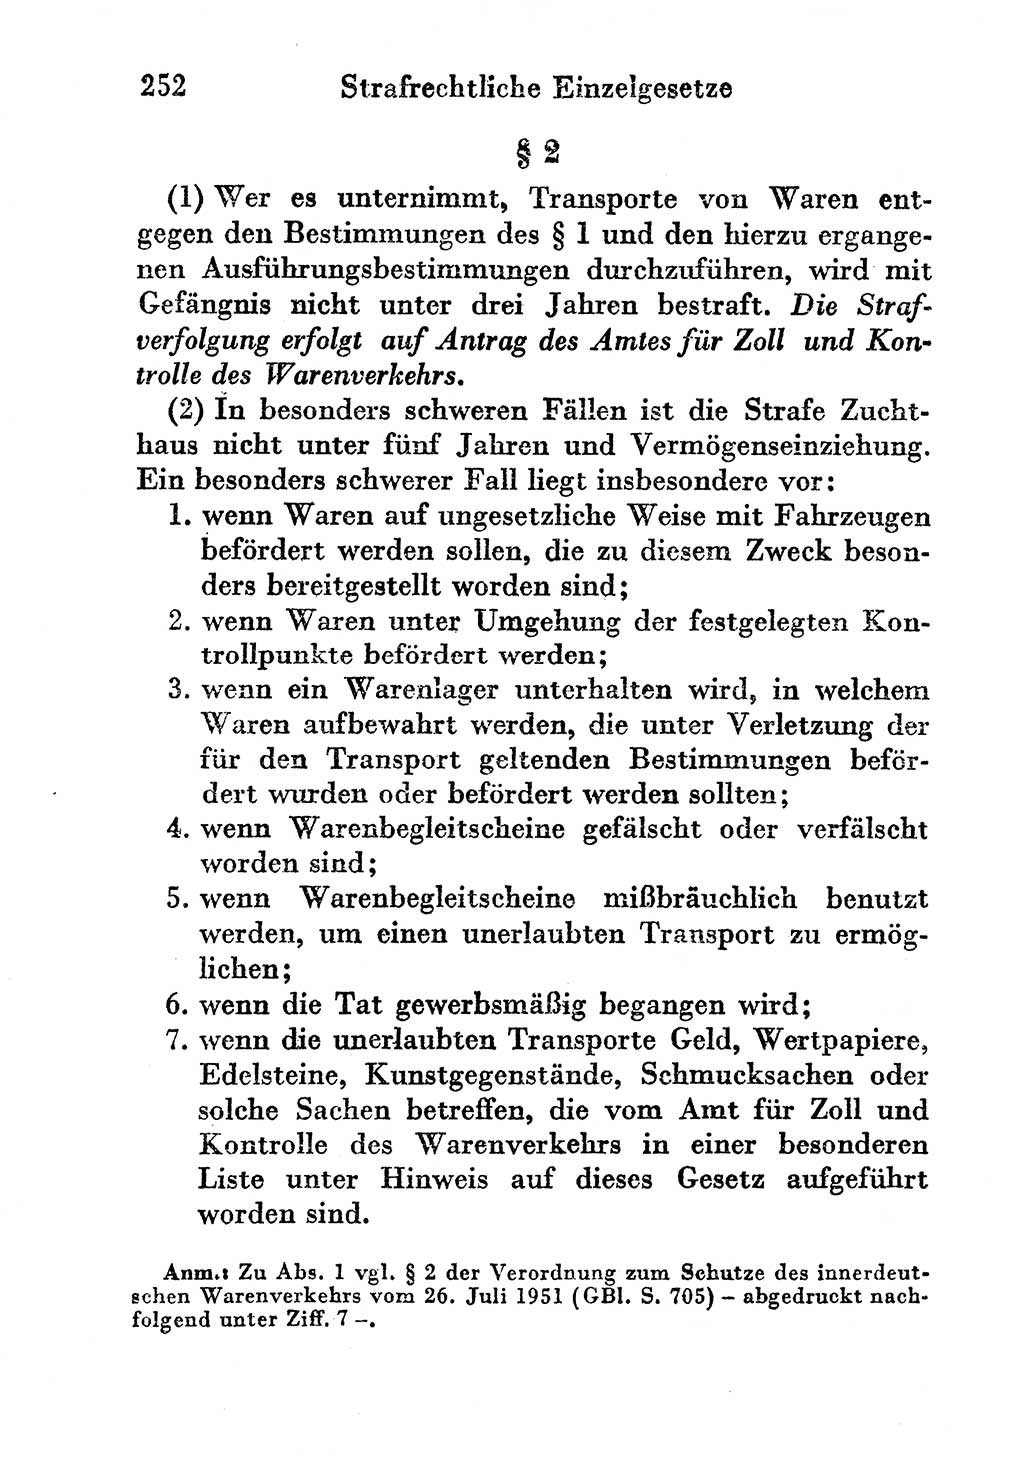 Strafgesetzbuch (StGB) und andere Strafgesetze [Deutsche Demokratische Republik (DDR)] 1956, Seite 252 (StGB Strafges. DDR 1956, S. 252)